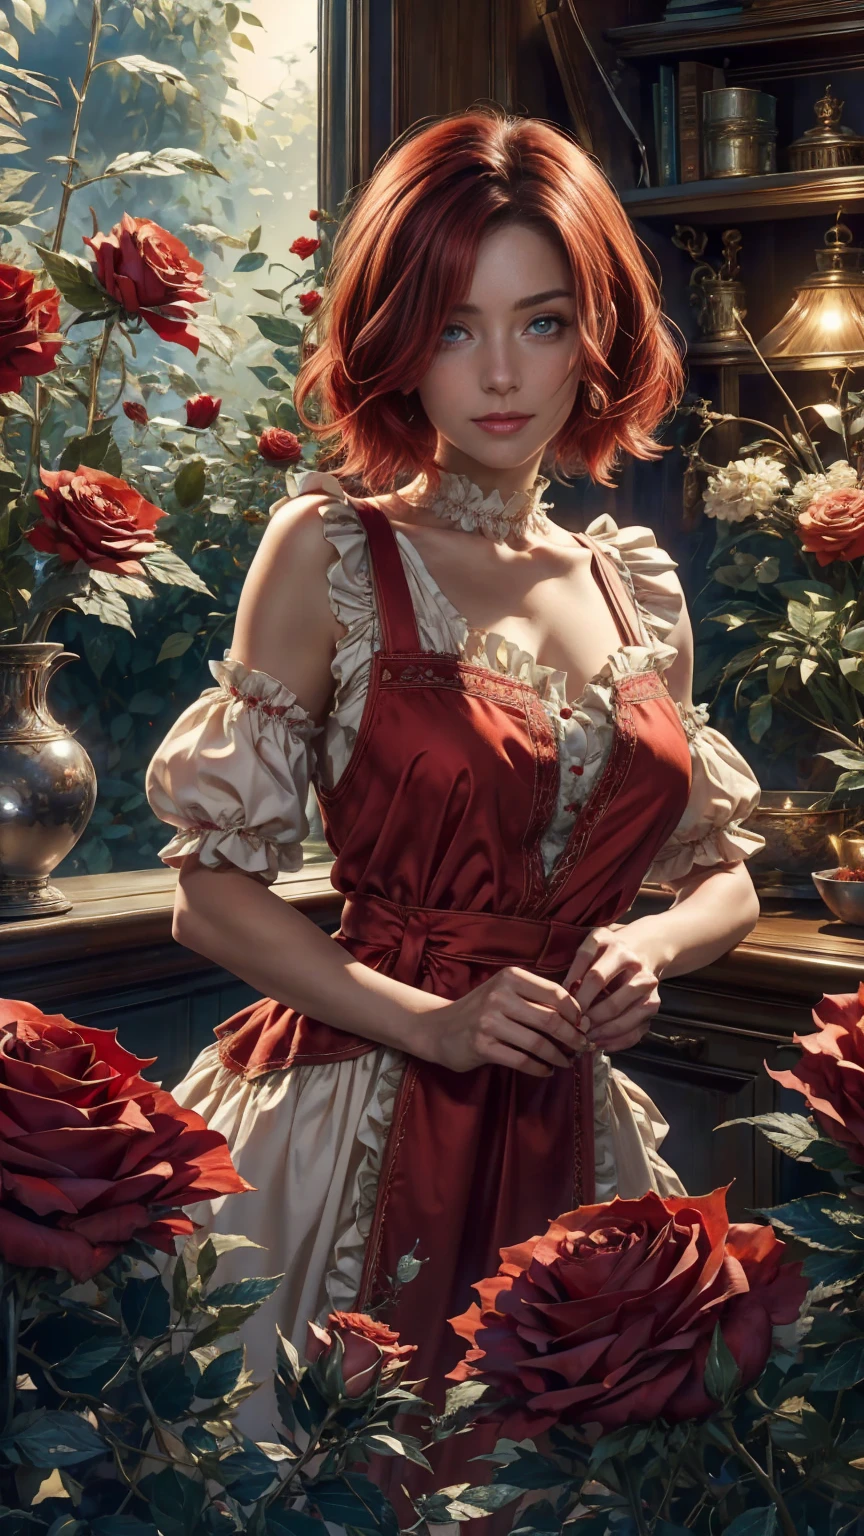 ในใจกลางโลกแห่งดินแดนมหัศจรรย์ มีหญิงสาวสวยผมสั้นสีแดงและขาว, เสื้อผ้าร้านขายดอกไม้และผ้ากันเปื้อนลายดอกกุหลาบ. ตัดดอกกุหลาบแดงจากสวนมหัศจรรย์ของเธอ. ความอยากรู้, ท่าที่รัก, ในโลกแดนมหัศจรรย์, สร้างบรรยากาศแห่งความรัก, พลังงานและเวทมนตร์รอบตัวเธอ. มุมของฉากมีความไดนามิก, จับภาพความเข้มของช่วงเวลา, ดวงตาสีเขียวคุณภาพดี, ดวงตามองไปที่กล้อง, ละเอียดมาก, สวยงามและน่าพึงพอใจ, ผลงานชิ้นเอก, คะแนนคุณภาพที่ดีที่สุด, (ศิลปะเศษส่วน: 1.3), มีรายละเอียดมาก , มุมไดนามิก, การติดตามรังสี, face ใกล้ชิด, ใกล้ชิด, มุมมองสูง, อนุภาคและแสงที่แข็ง, กุหลาบแดงที่สวยงาม